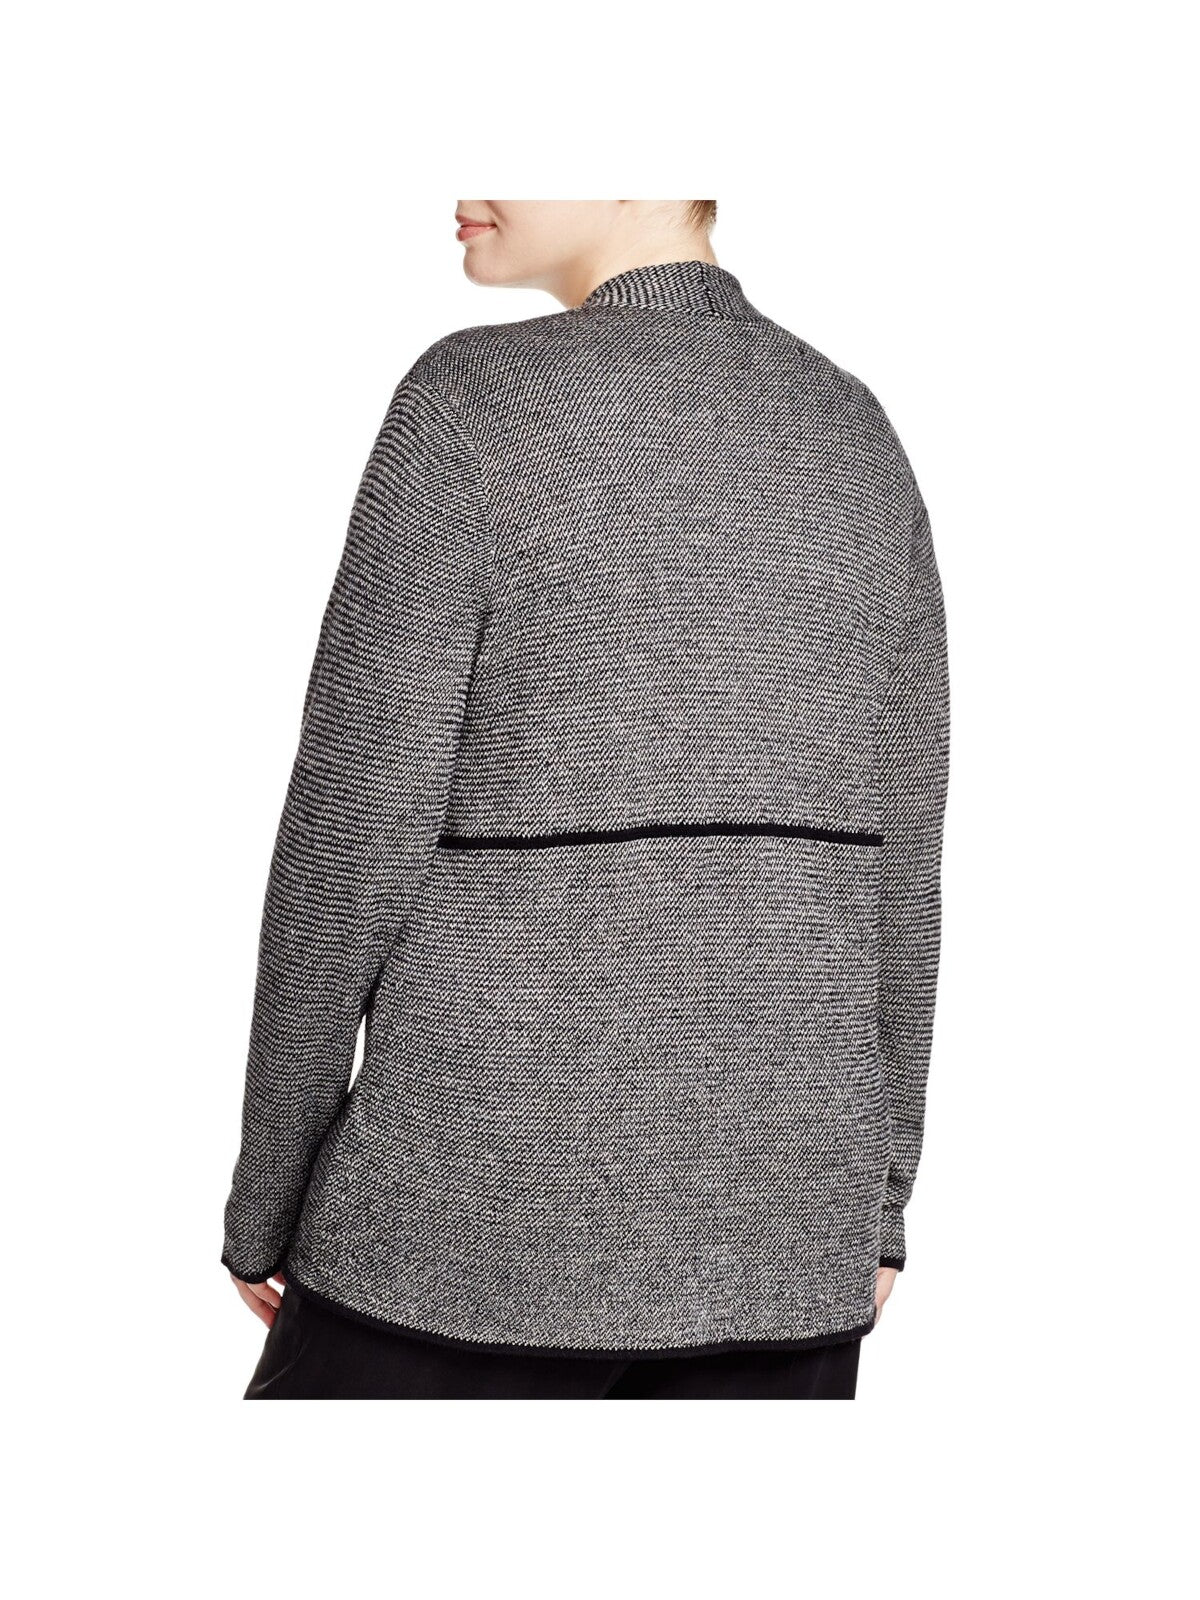 EILEEN FISHER Womens Black Wool Blend Herringbone Long Sleeve Open Cardigan Wear To Work Sweater Plus 1X